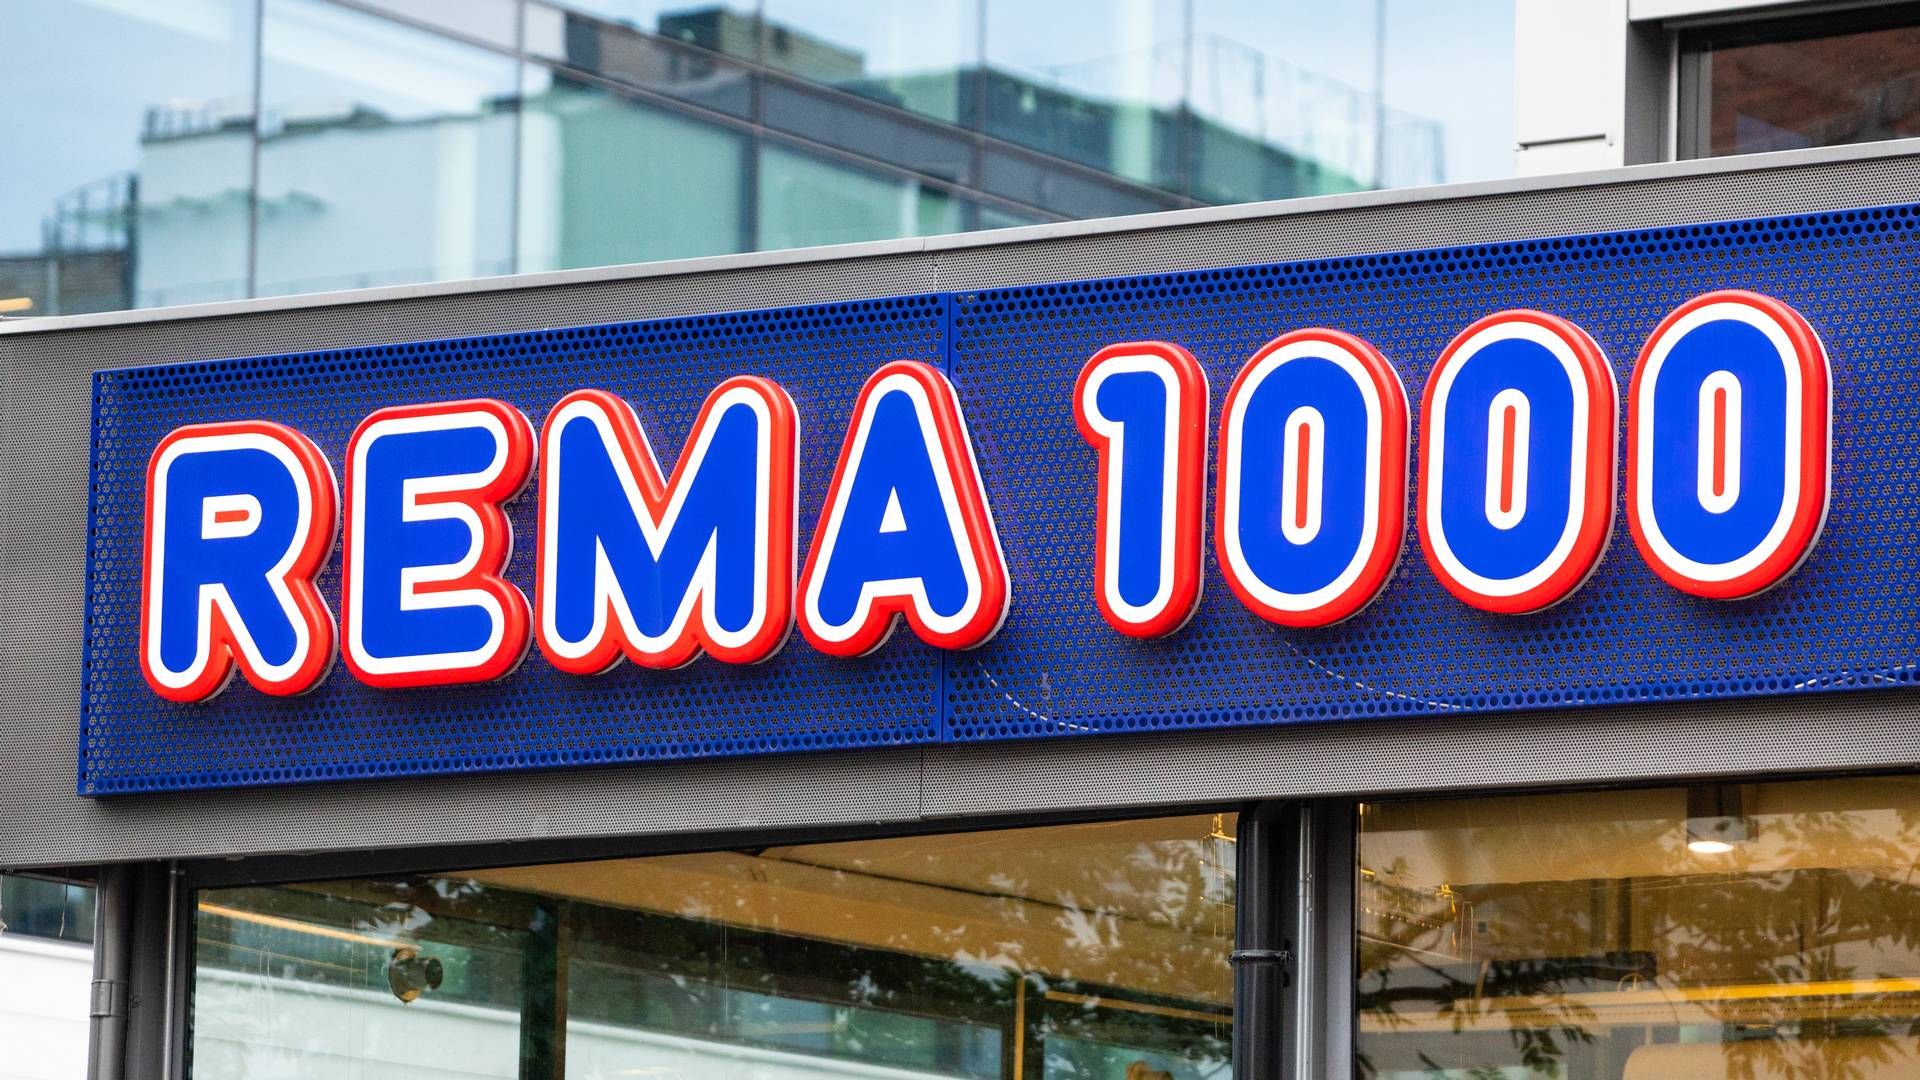 MARKED: Rema 1000 kan komme til å ta størst andel av det danske dagligvaremarkedet i framtida, viser nye handelsprognoser. | Foto: NTB scanpix